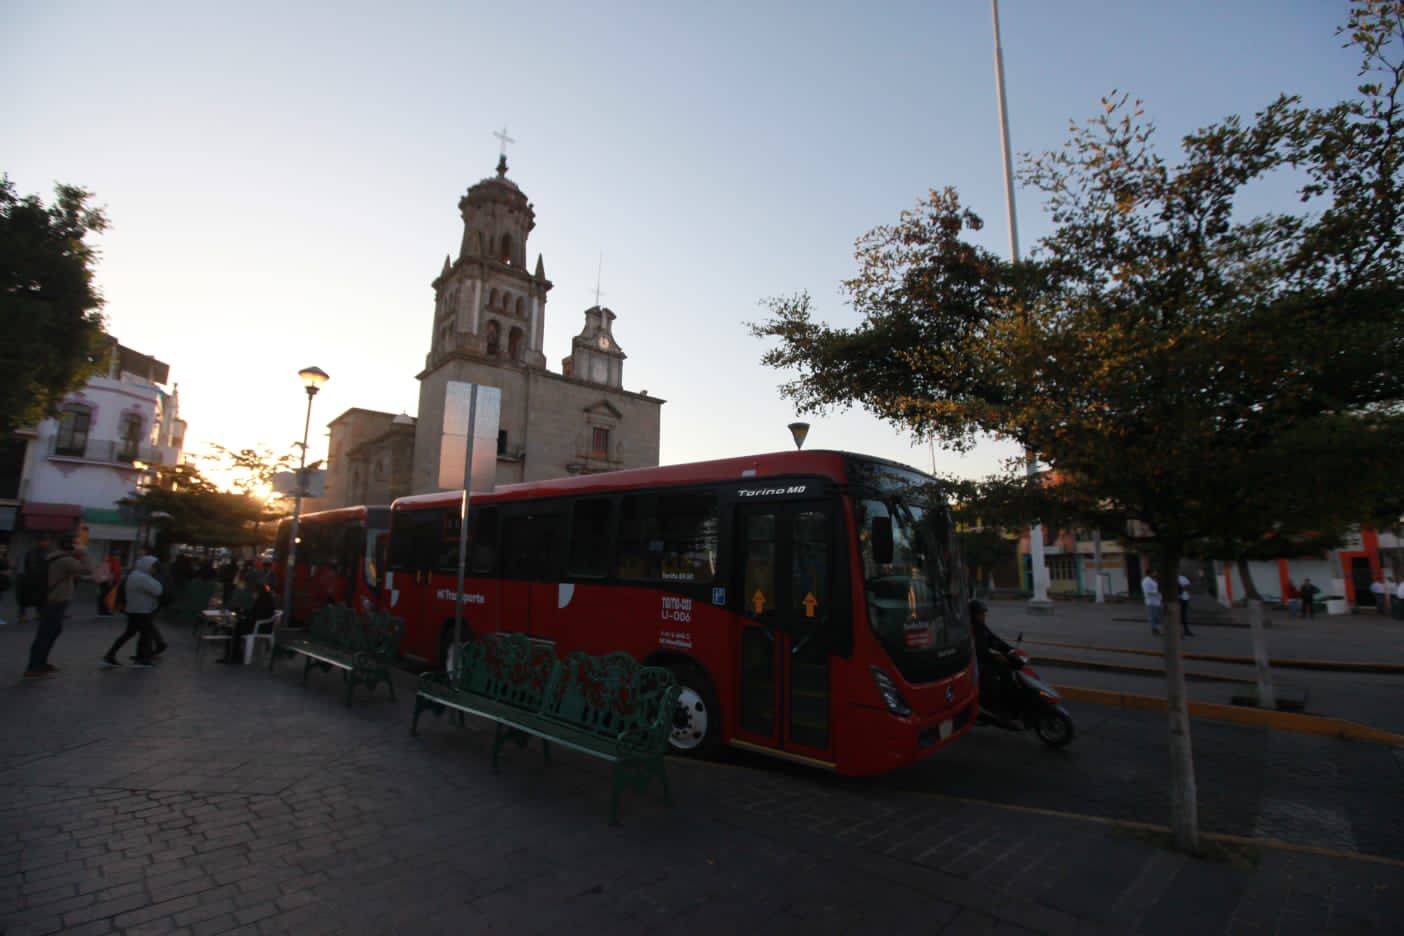 Estrena Zapotlanejo servicio de transporte público que costará 9.50 pesos